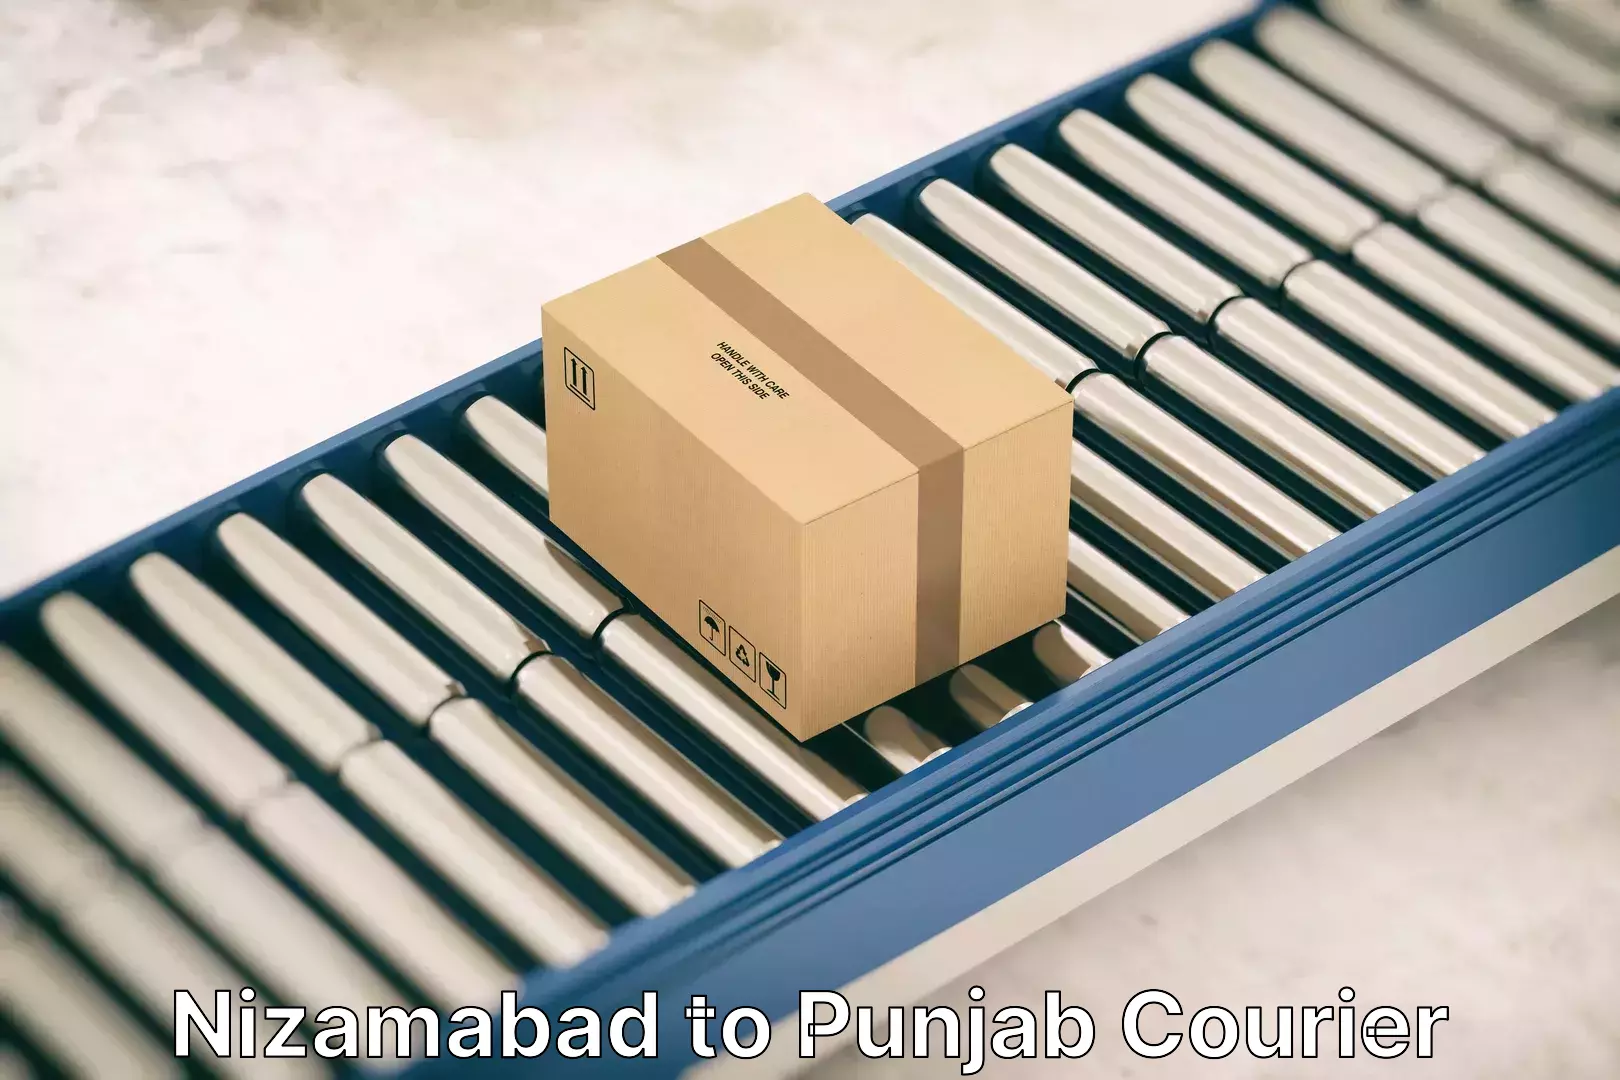 Furniture transport services Nizamabad to Punjab